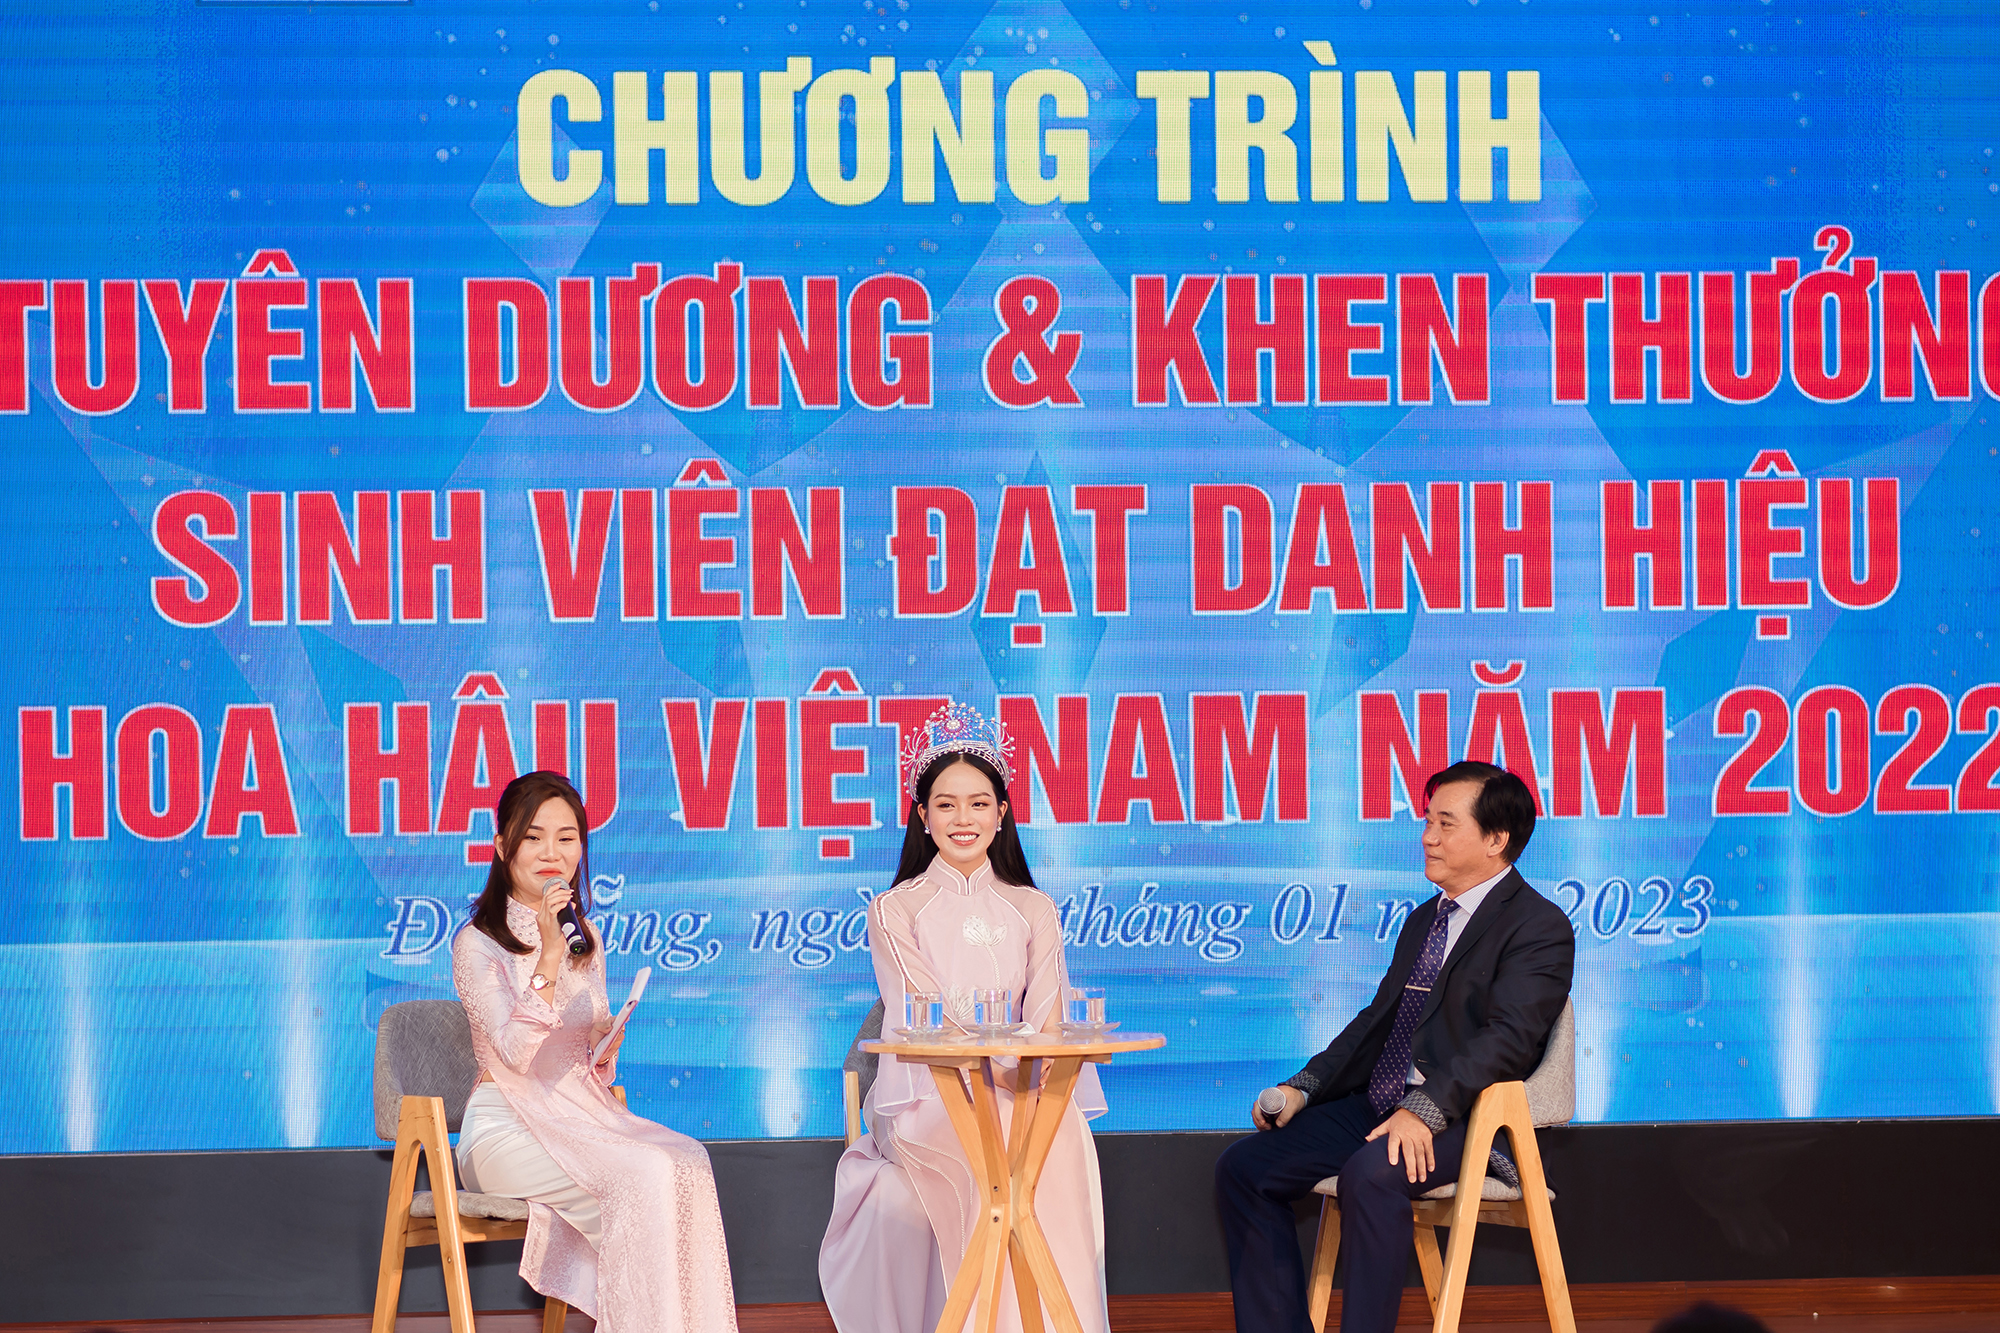 Nhan sắc người đẹp Đà Nẵng sau 2 tháng đăng quang Hoa hậu Việt Nam 2022 - Ảnh 3.